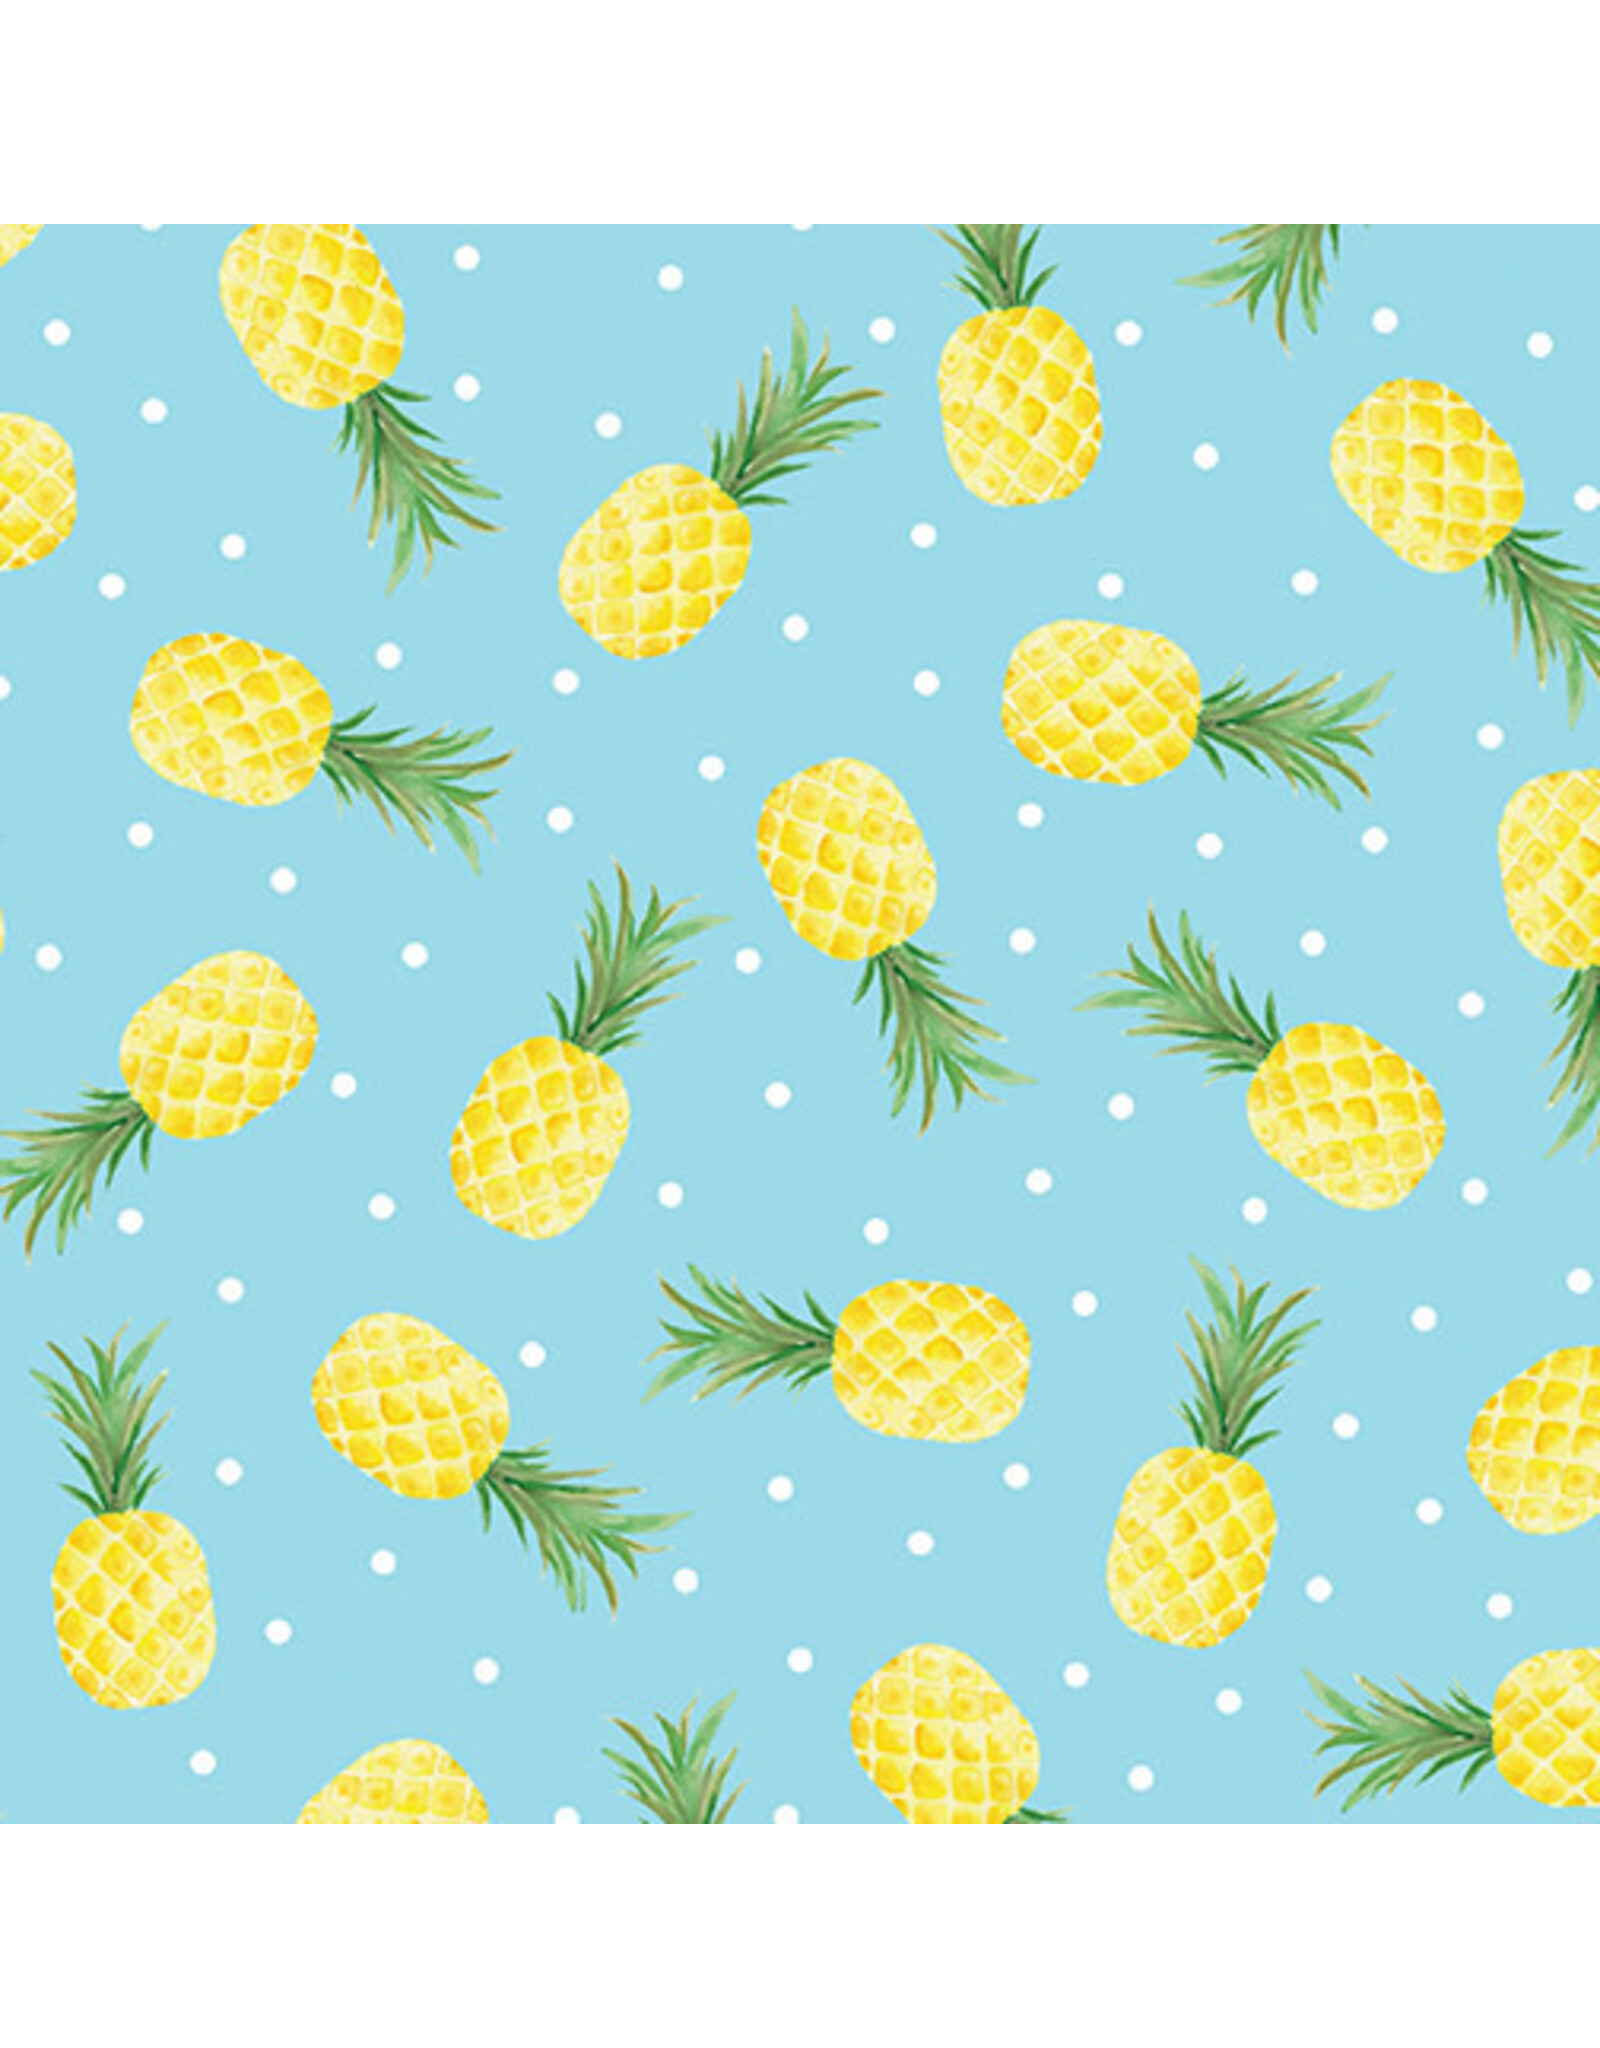 Kanvas Studio Fun in the Sun - Pineapple Fun Turquoise coupon (± 48 x 110 cm)